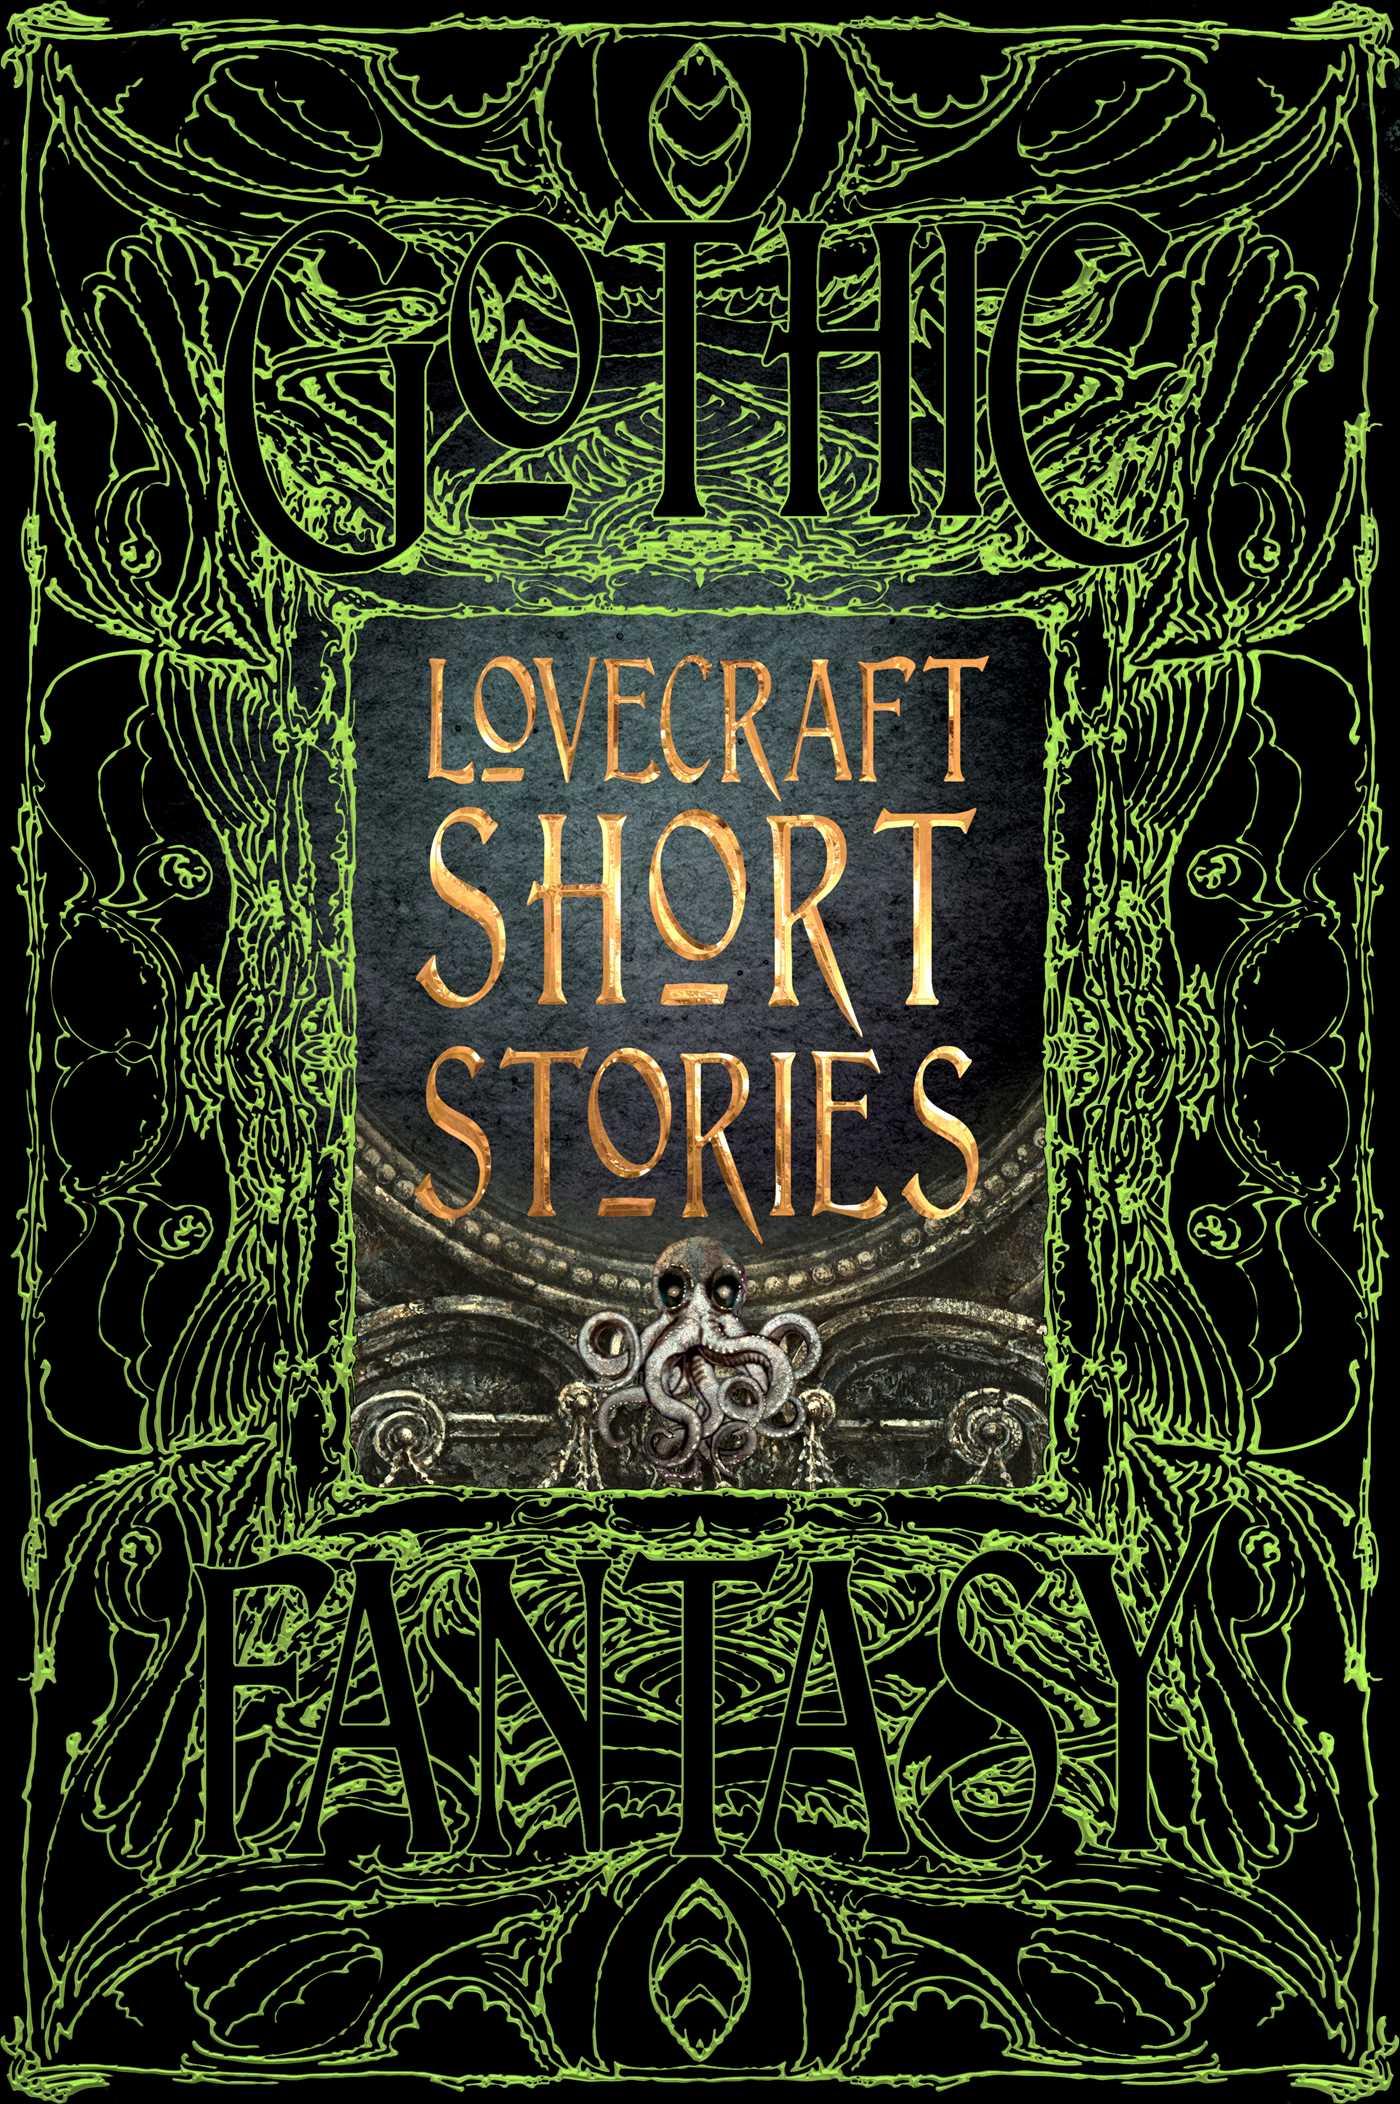 Lovecraft Short Stories / H. P. Lovecraft / Buch / Gebunden / Englisch / 2017 / Flame Tree Publishing / EAN 9781786644657 - Lovecraft, H. P.